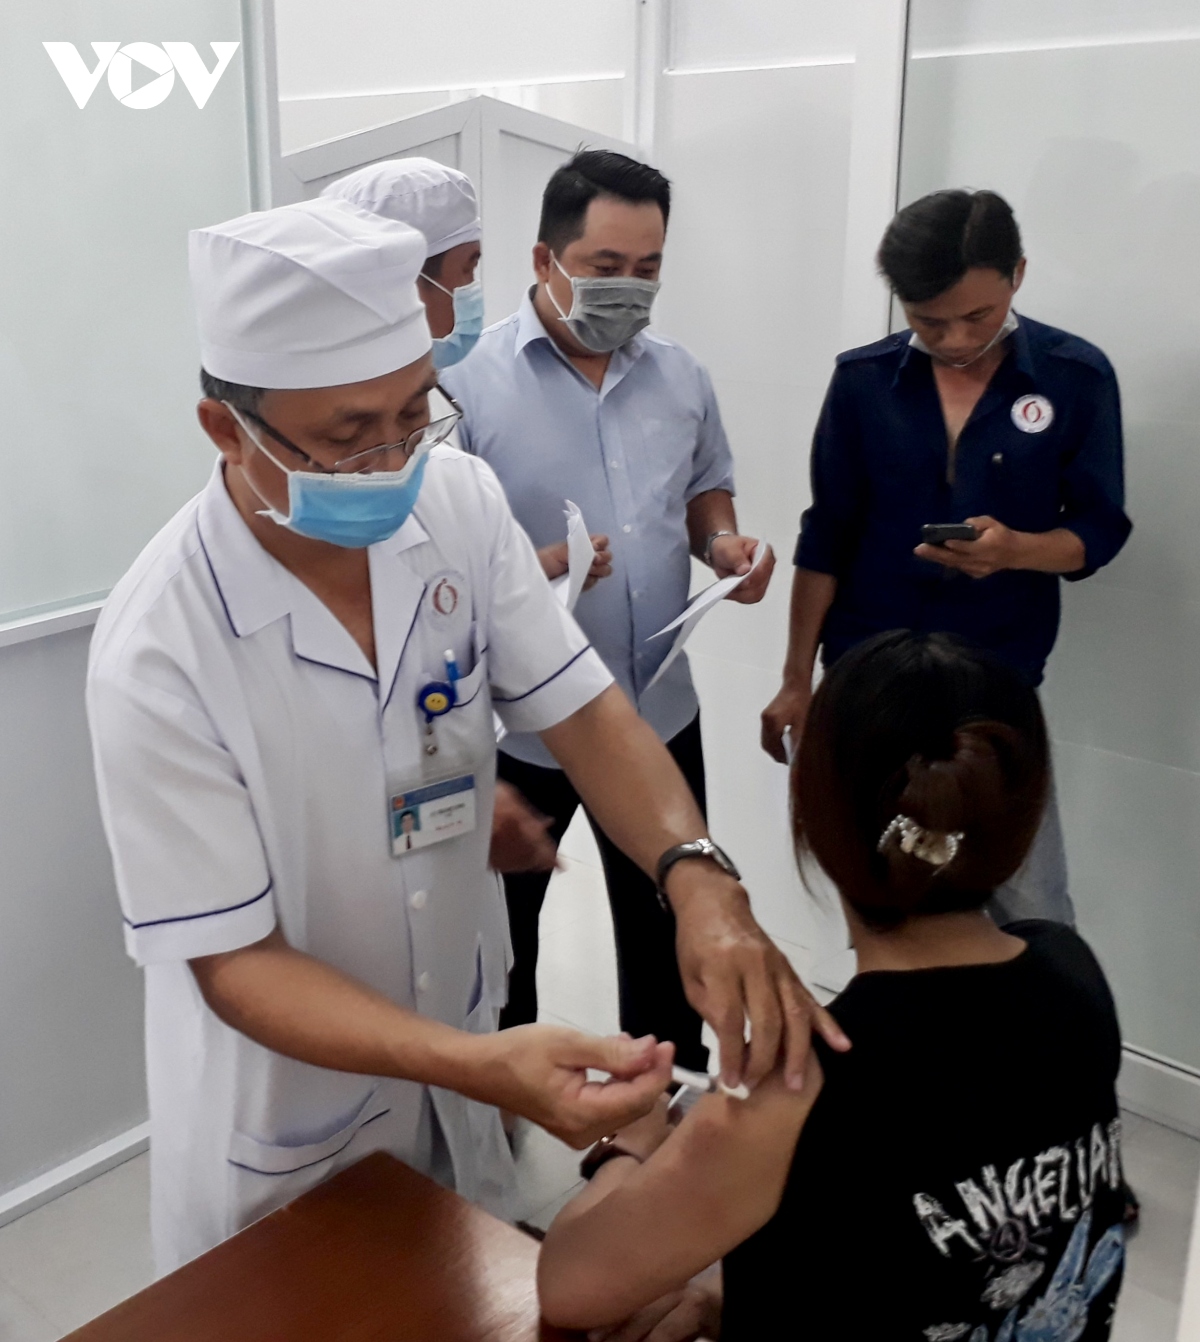 yen bai, bac lieu tiem vaccine phong covid- 19 cho nhung truong hop dau tien hinh anh 5